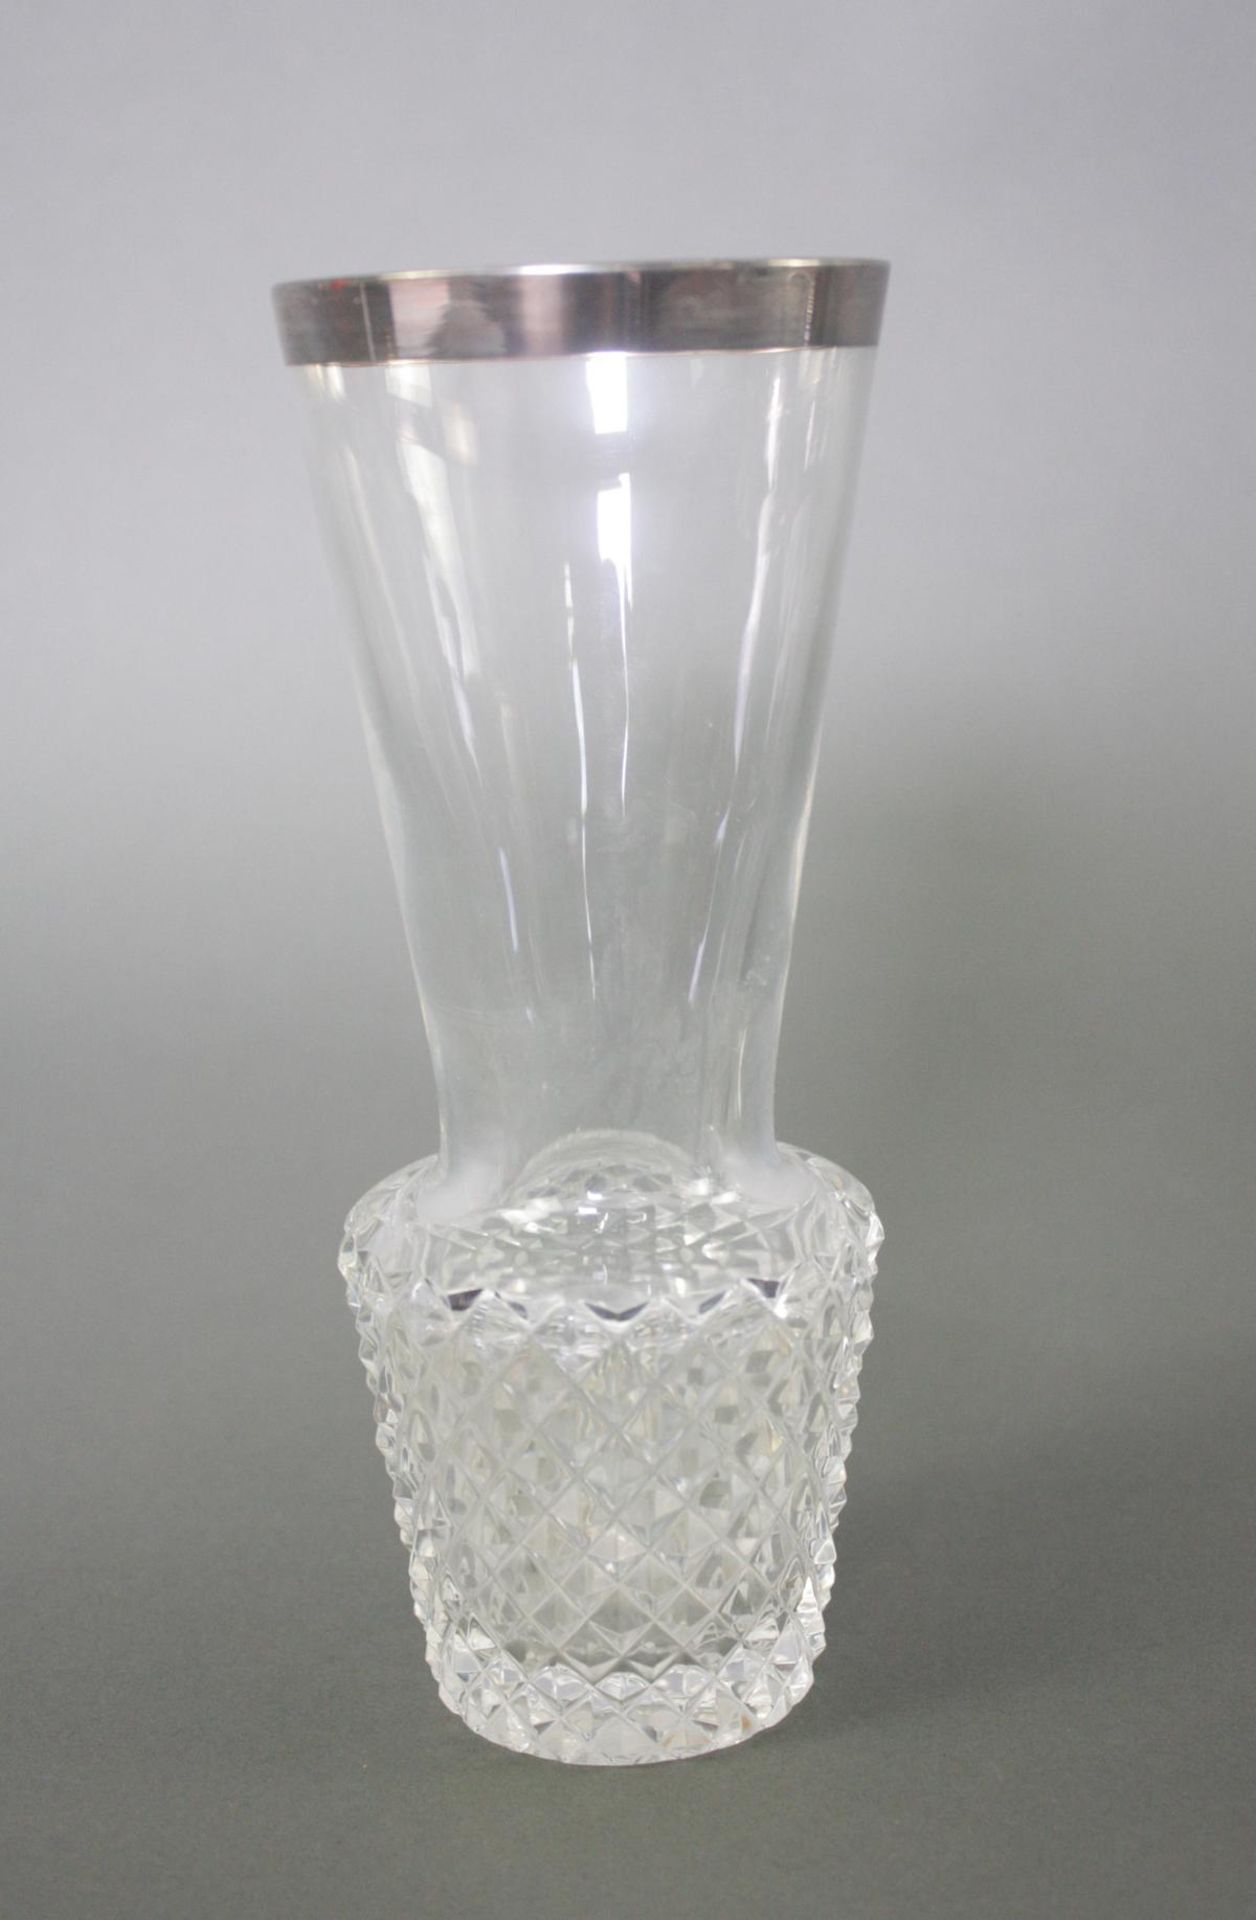 3 Teile Kristall mit Silbermontur. Karaffe, Schale und Vase - Image 5 of 5